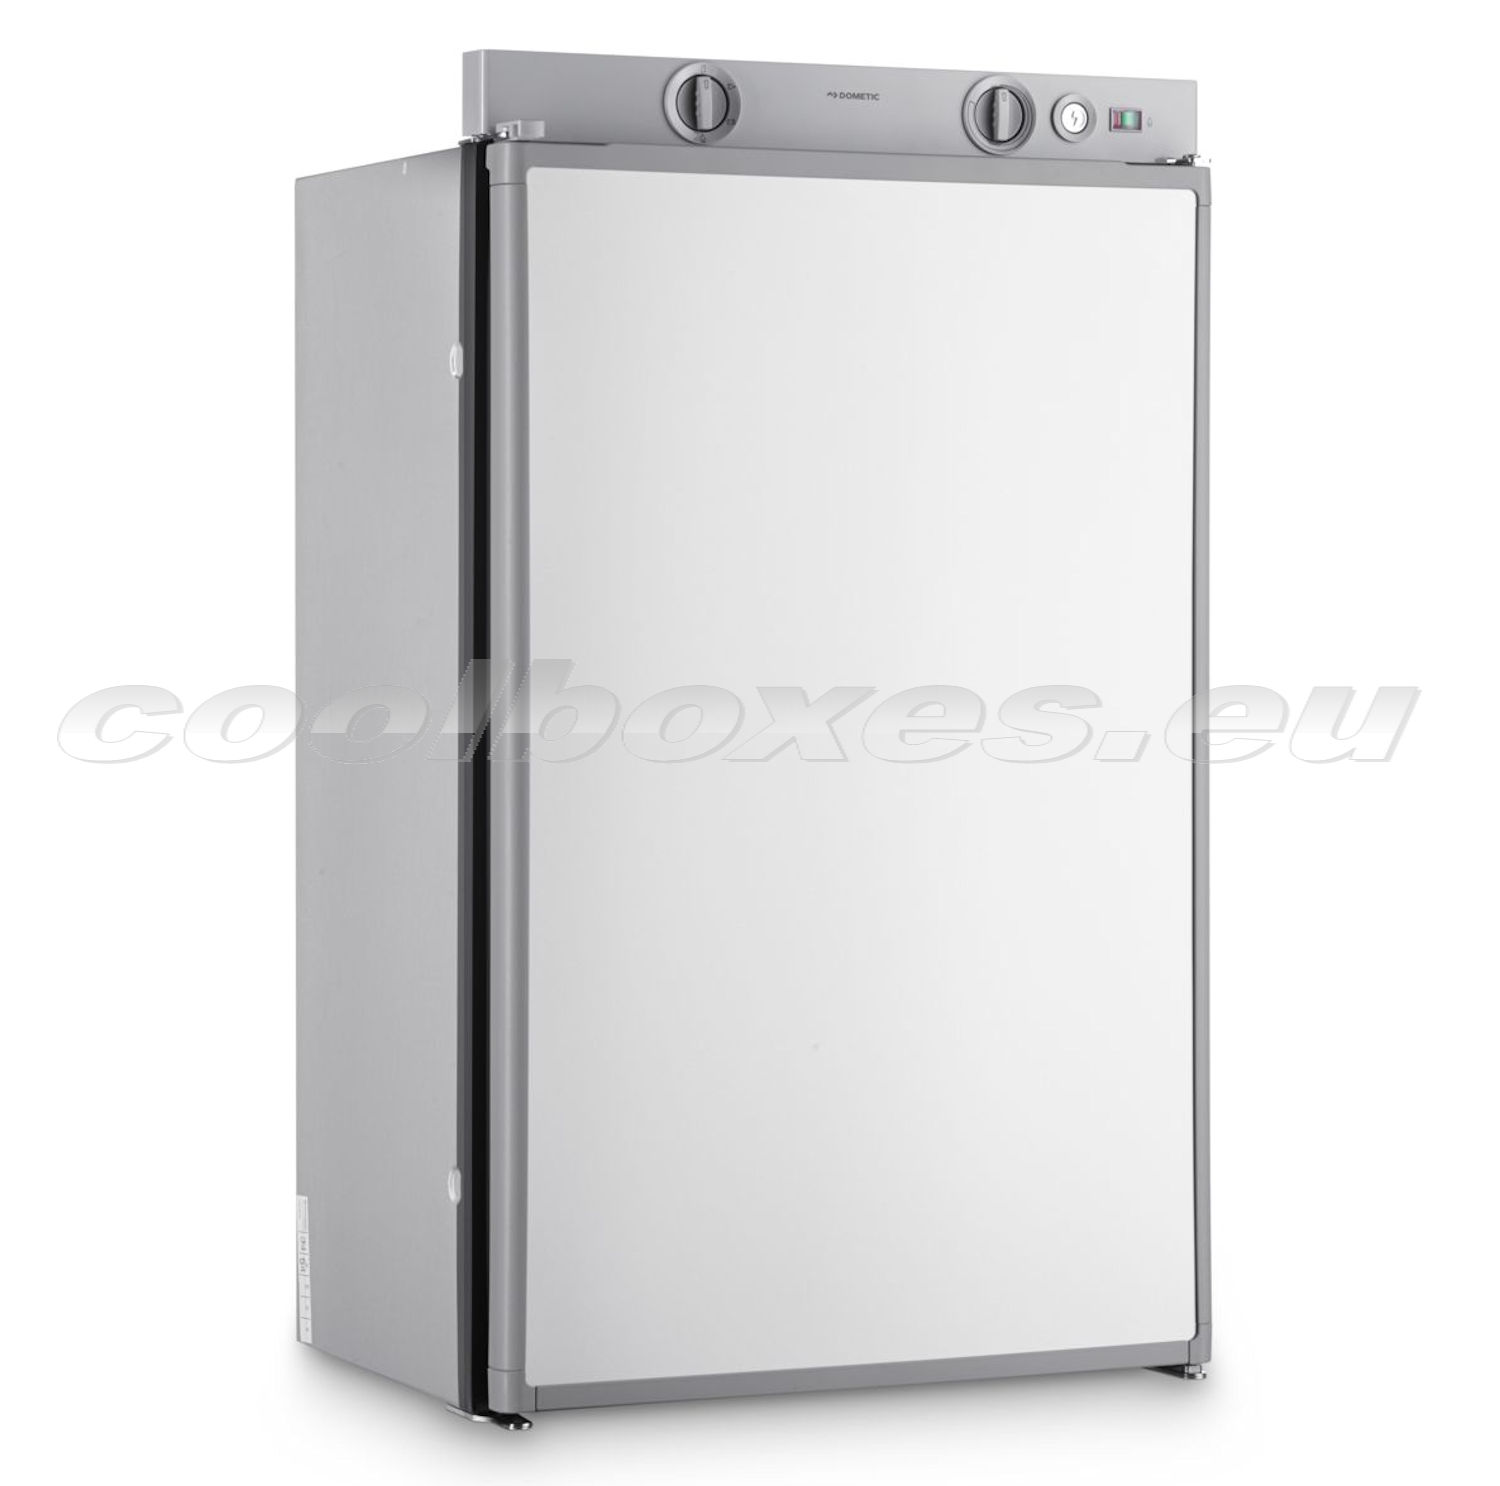 Dometic RM 5380 - plynová chladnička, 12V DC, 230V AC